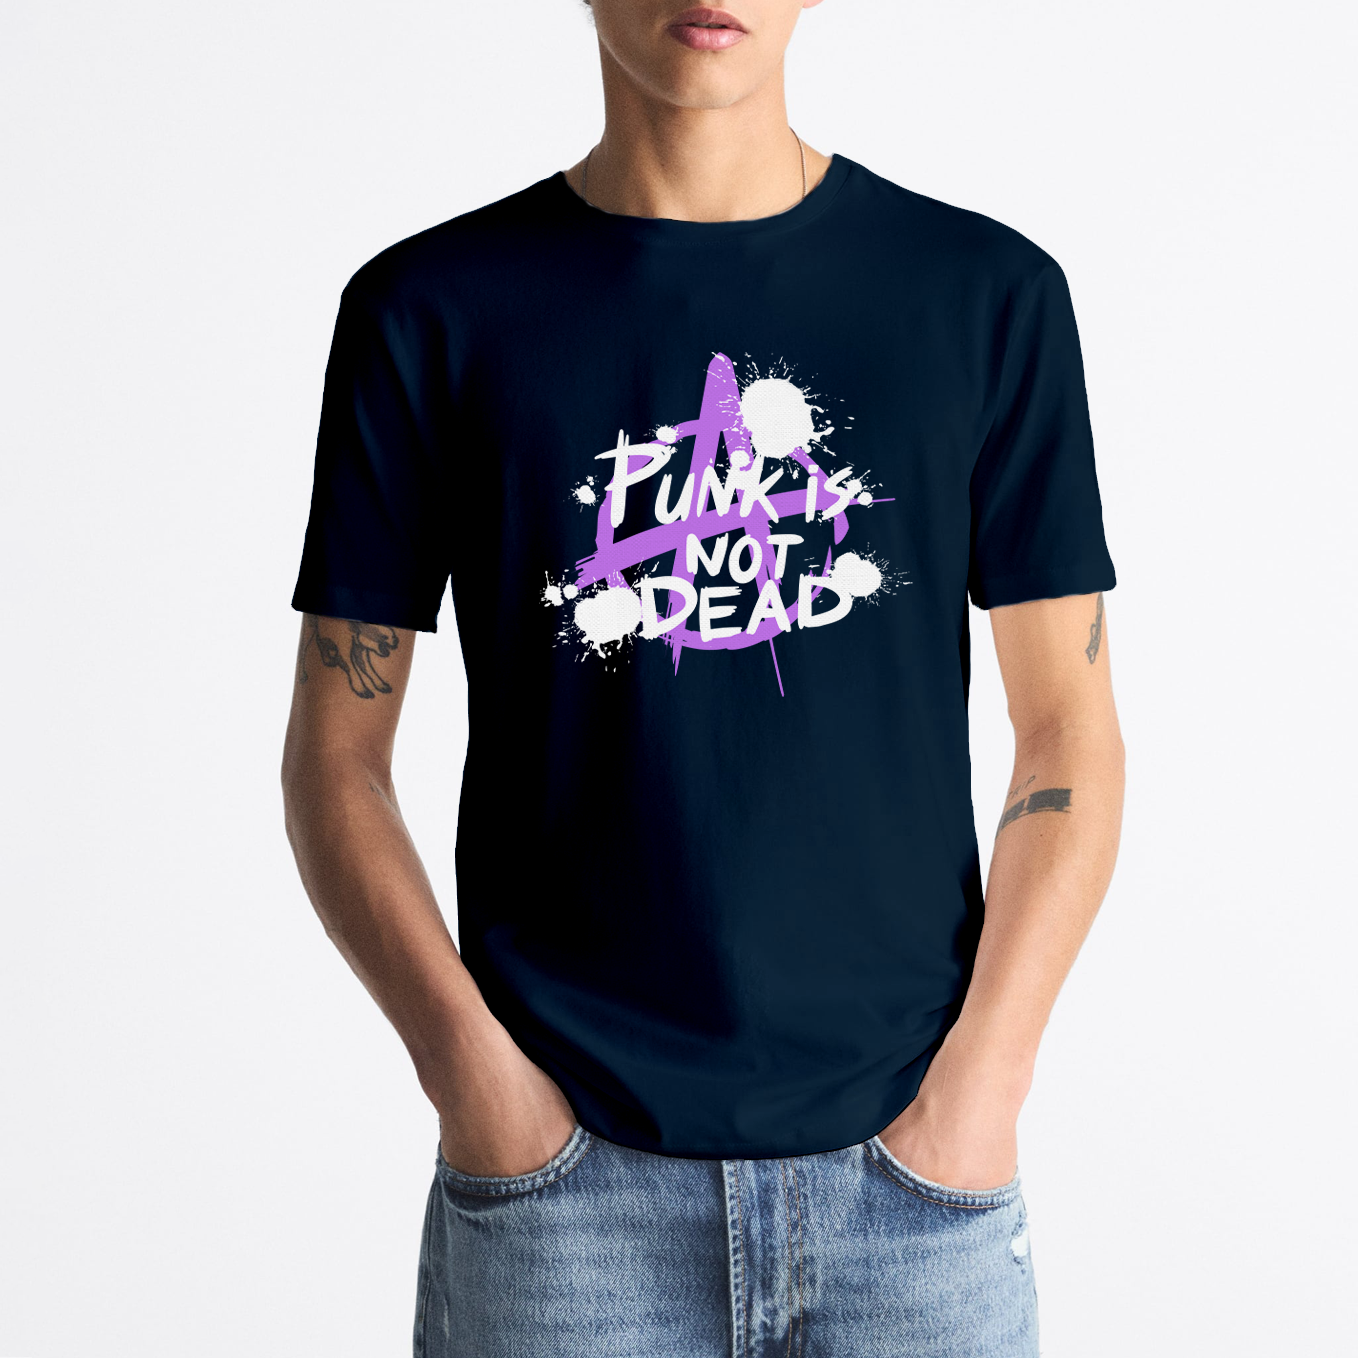 T-shirt "Punk is not Dead"